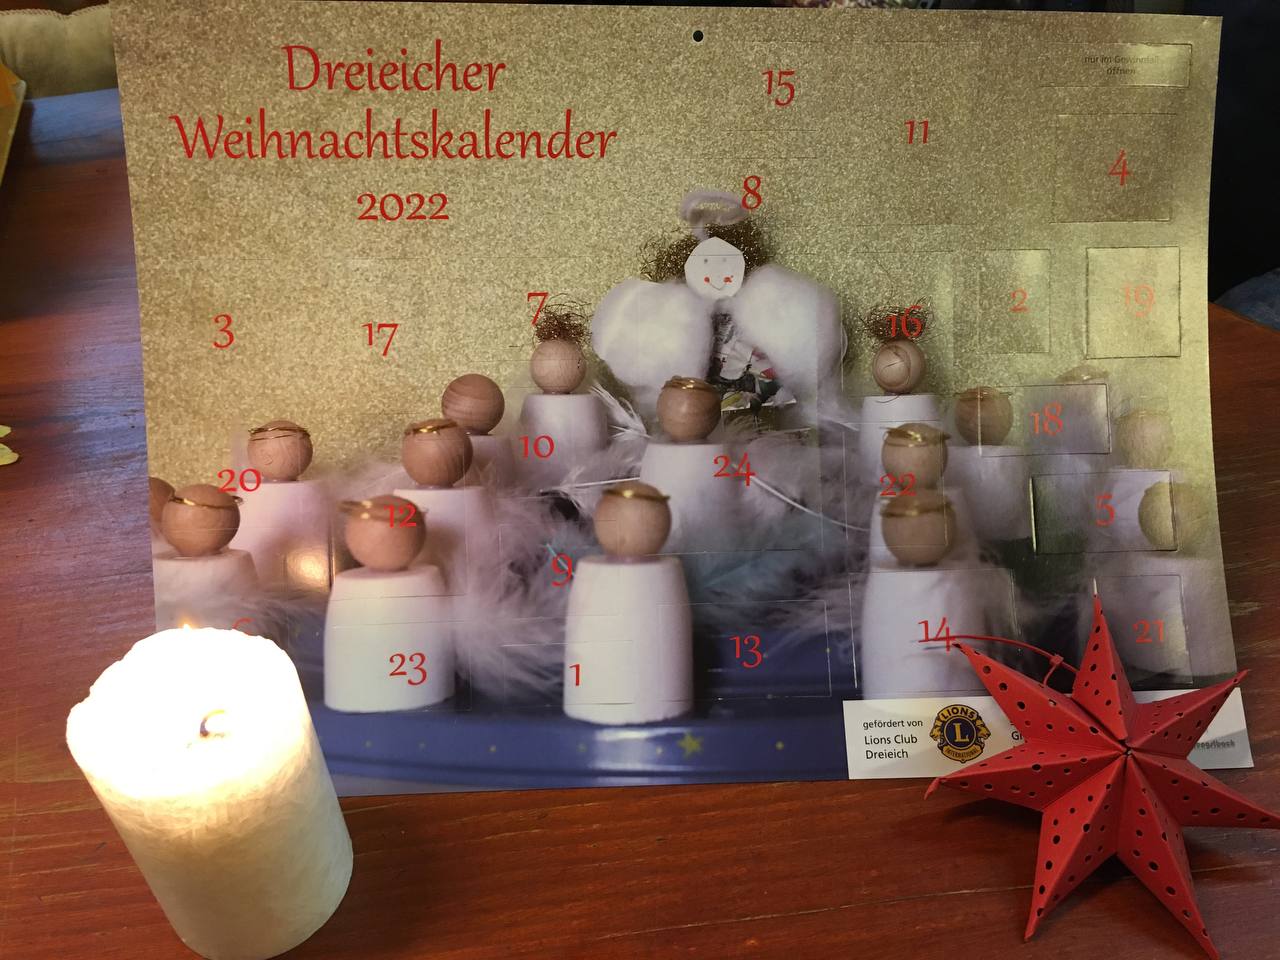 You are currently viewing Dreieicher Weihnachtskalender 2022